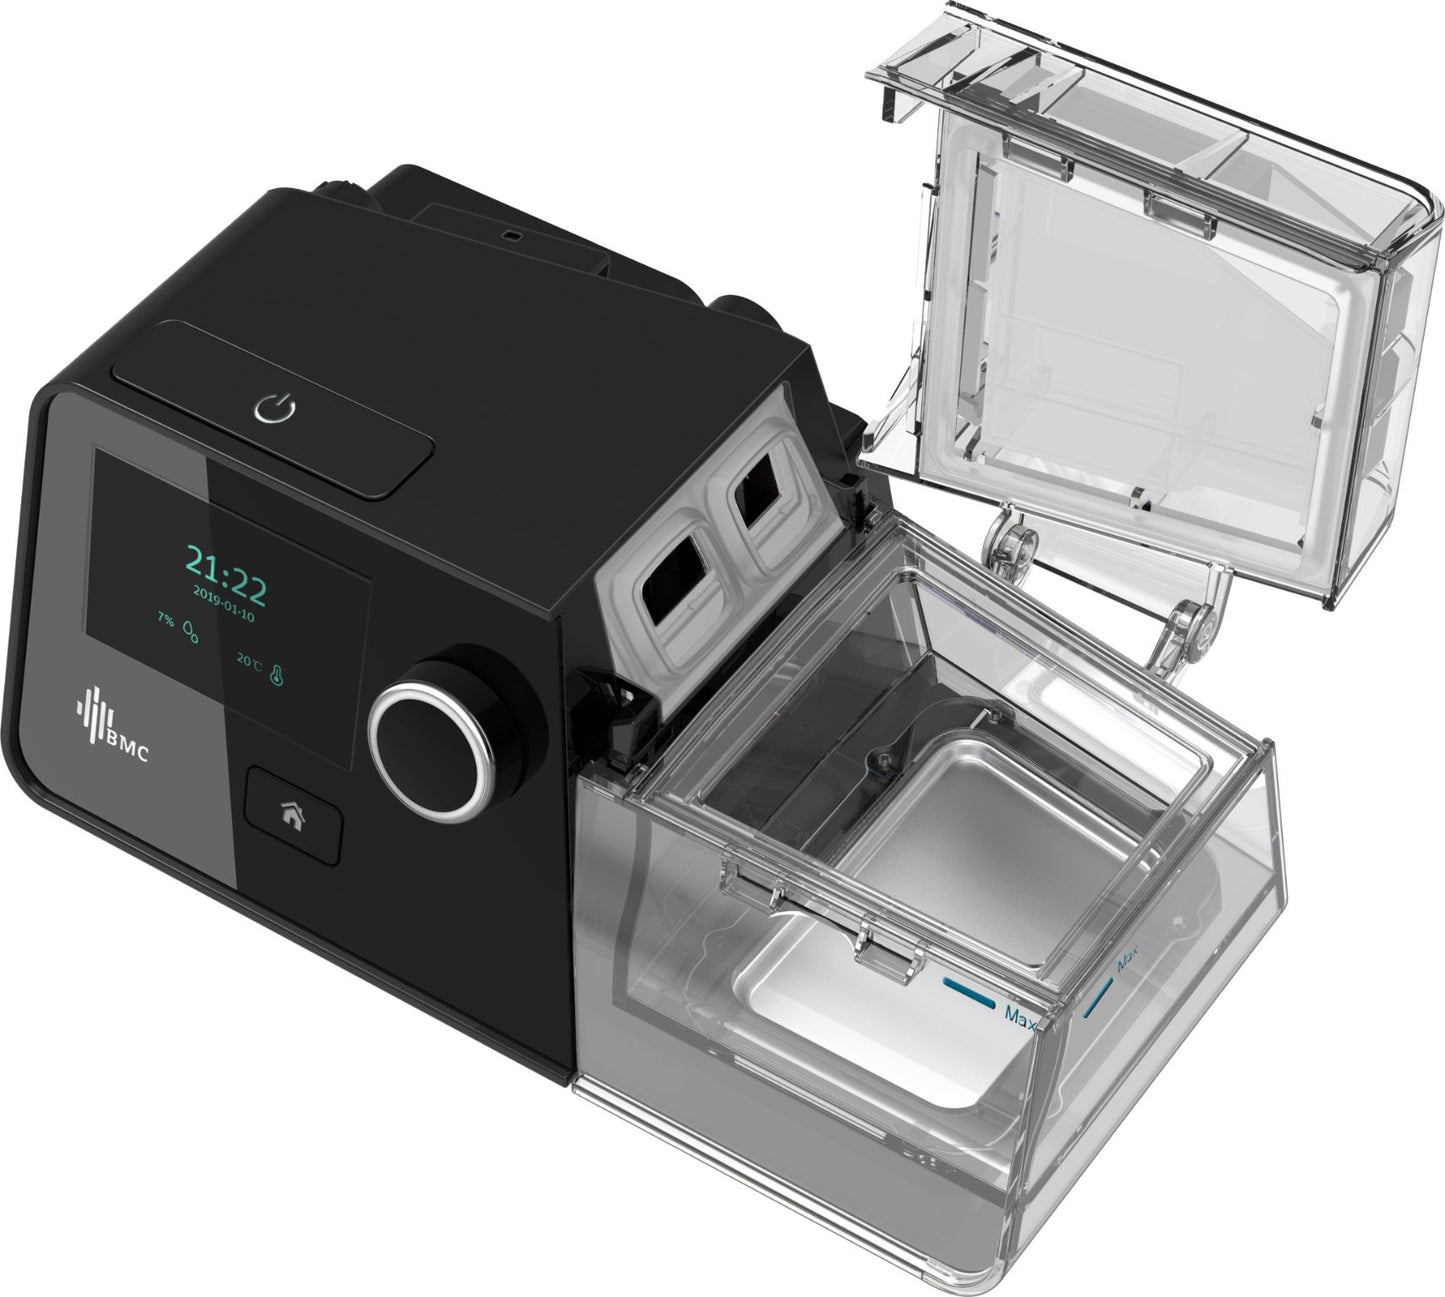 BMC Luna G3 A20 Auto CPAP Machine for obstructive sleep apnea